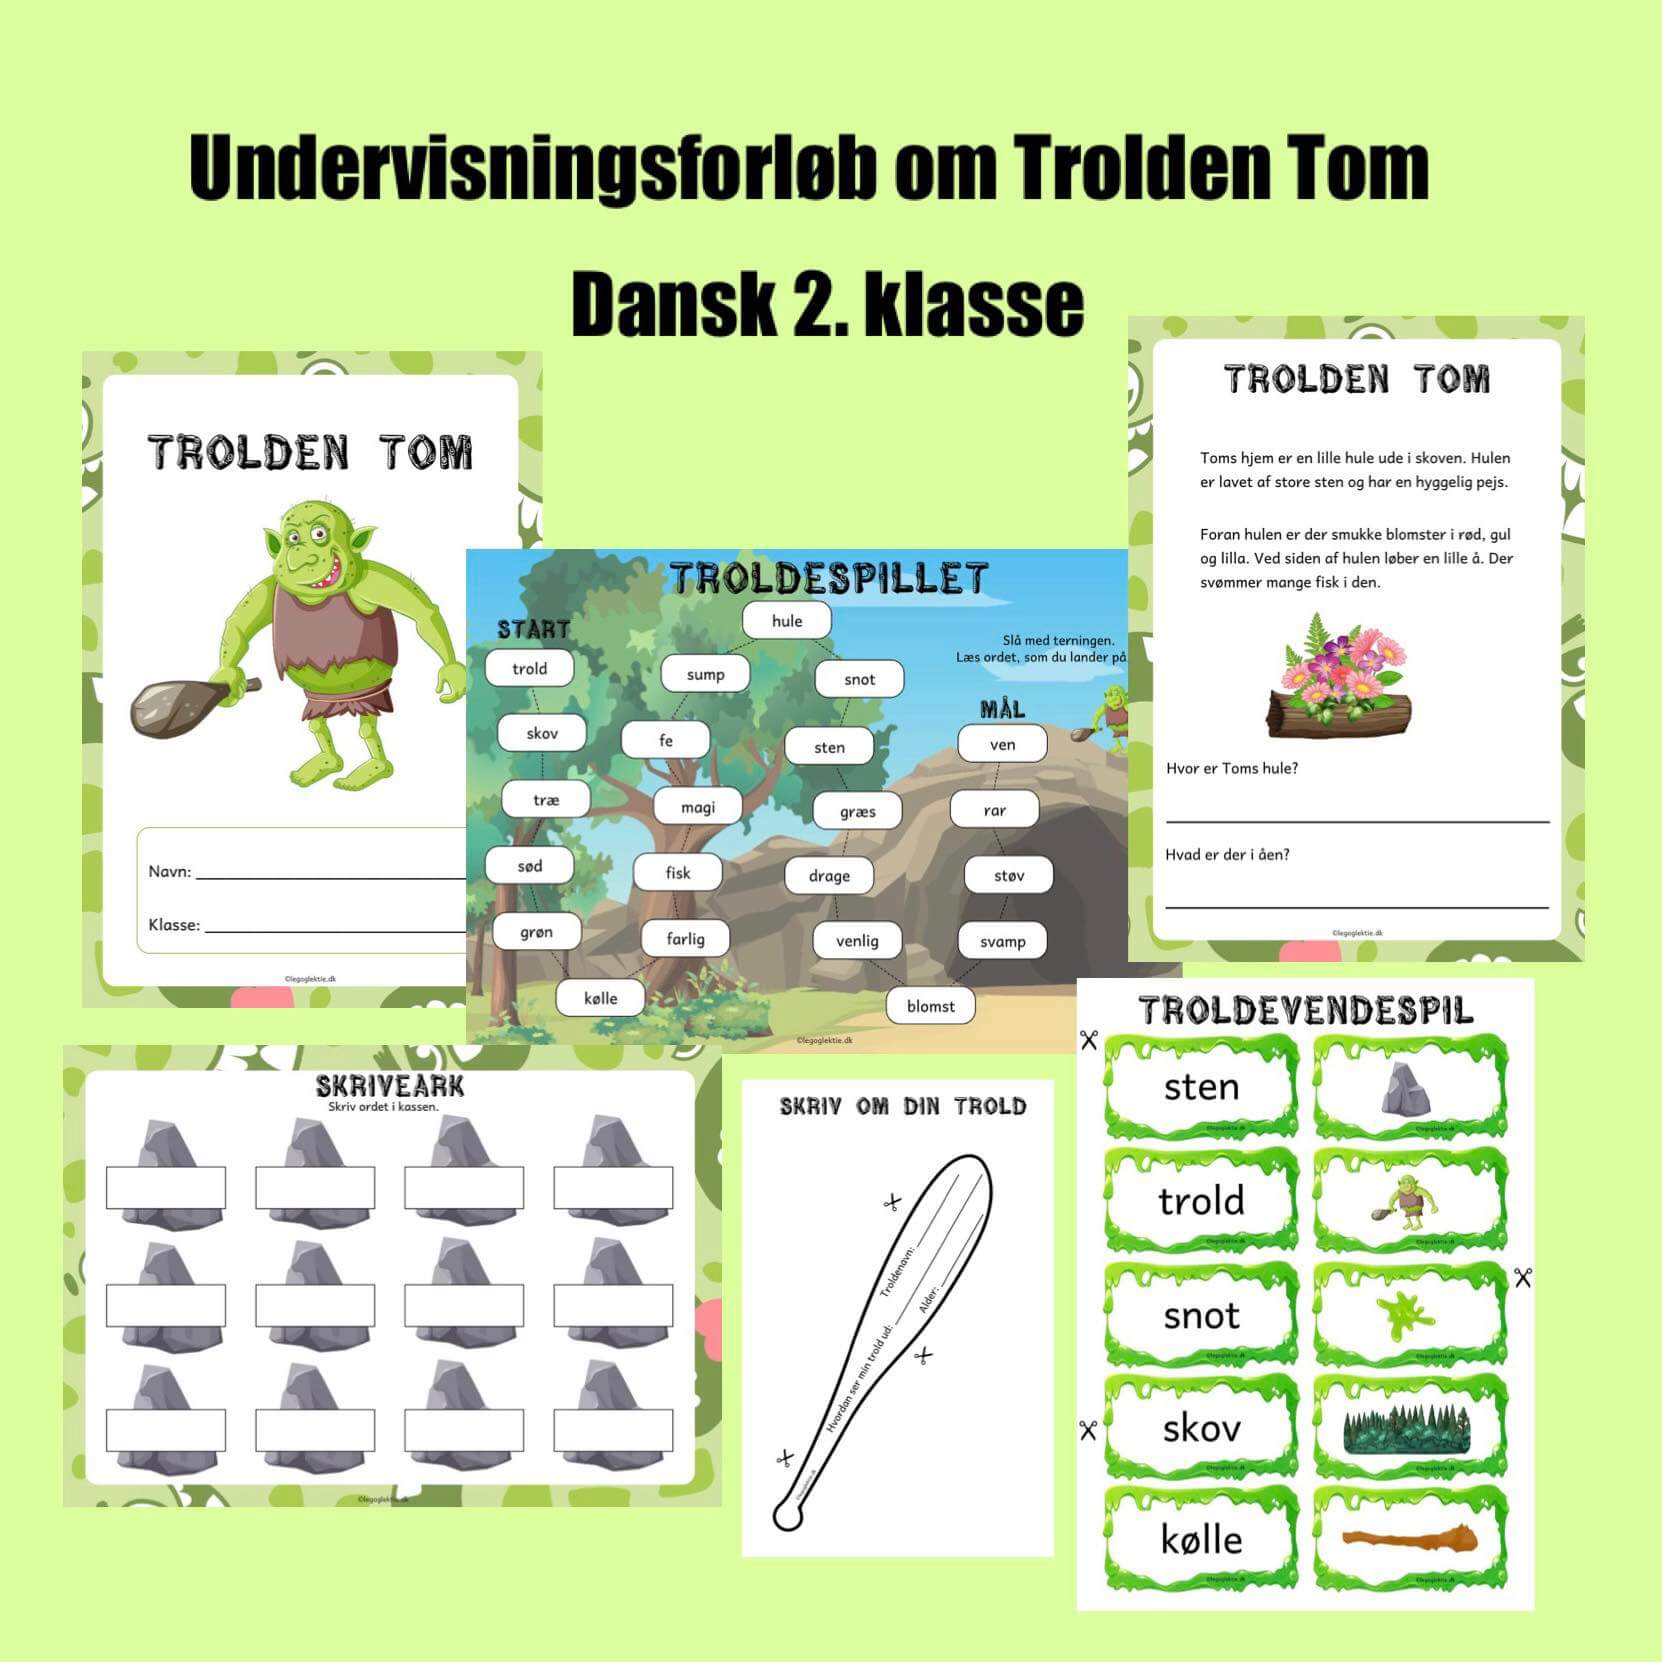 Undervisningsforløb om Trolden Tom. Et undervisningsforløb til dansk i 2. klasse med både opgavehæfte og aktiviteter.